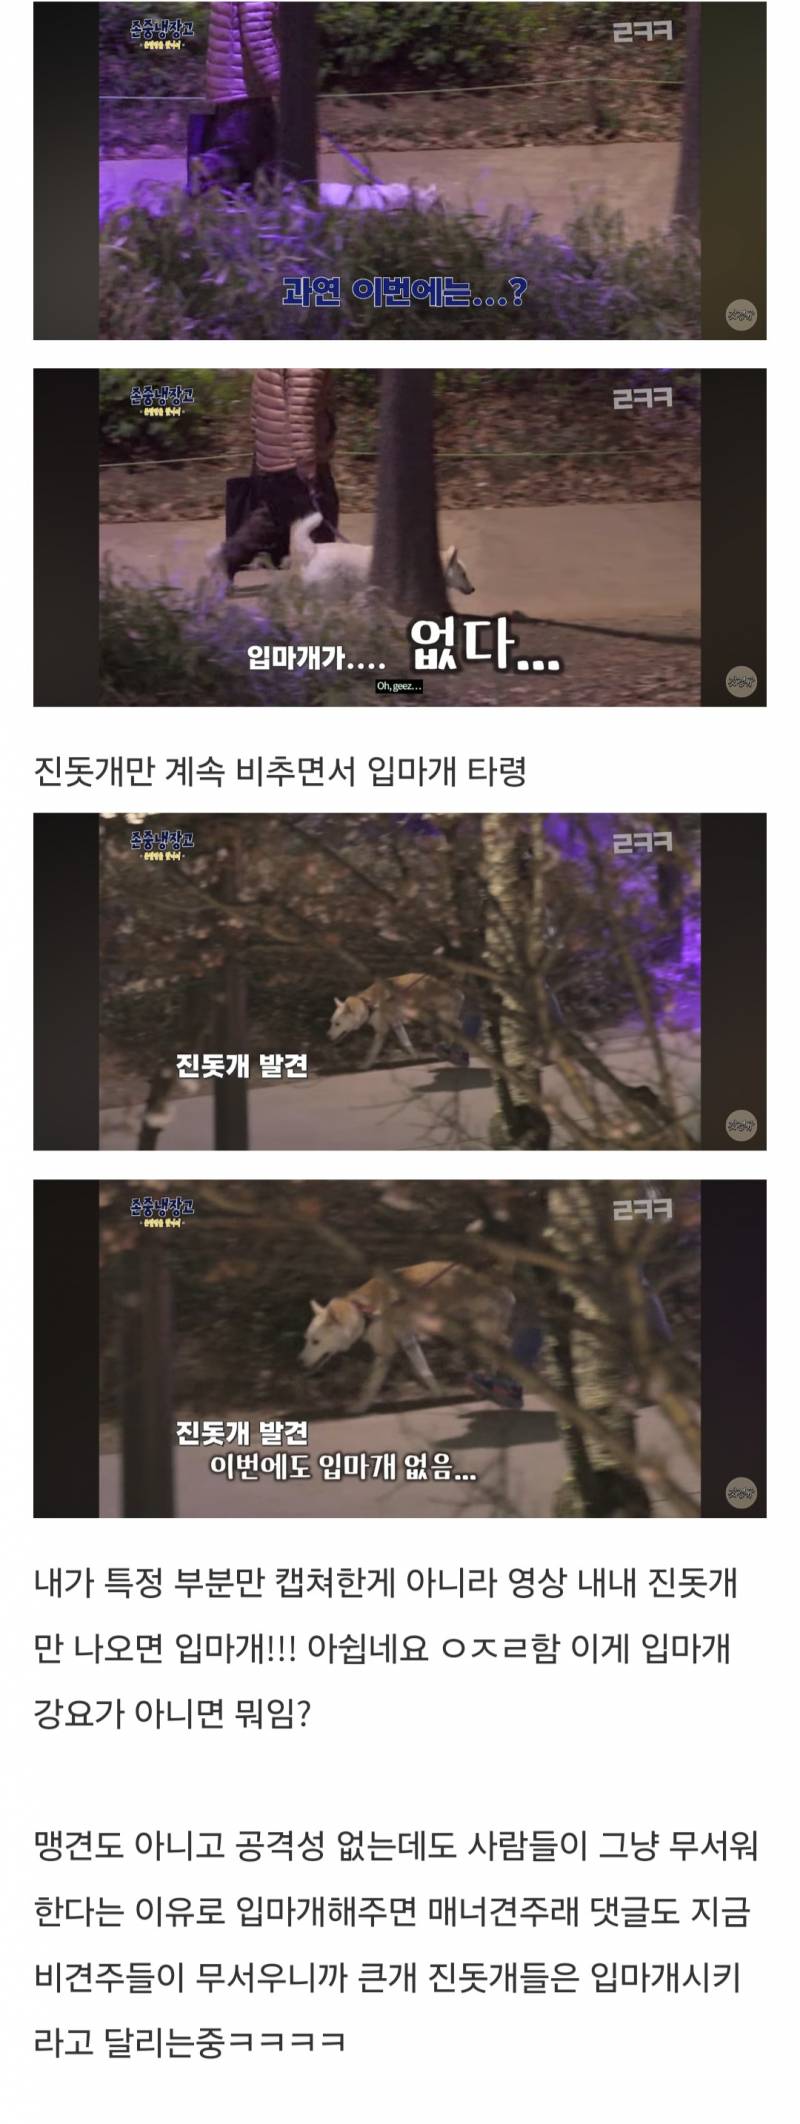 진돗개 견주 분 몰카찍어서 입마개 운운한 이경규 유튜브 방송 | 인스티즈